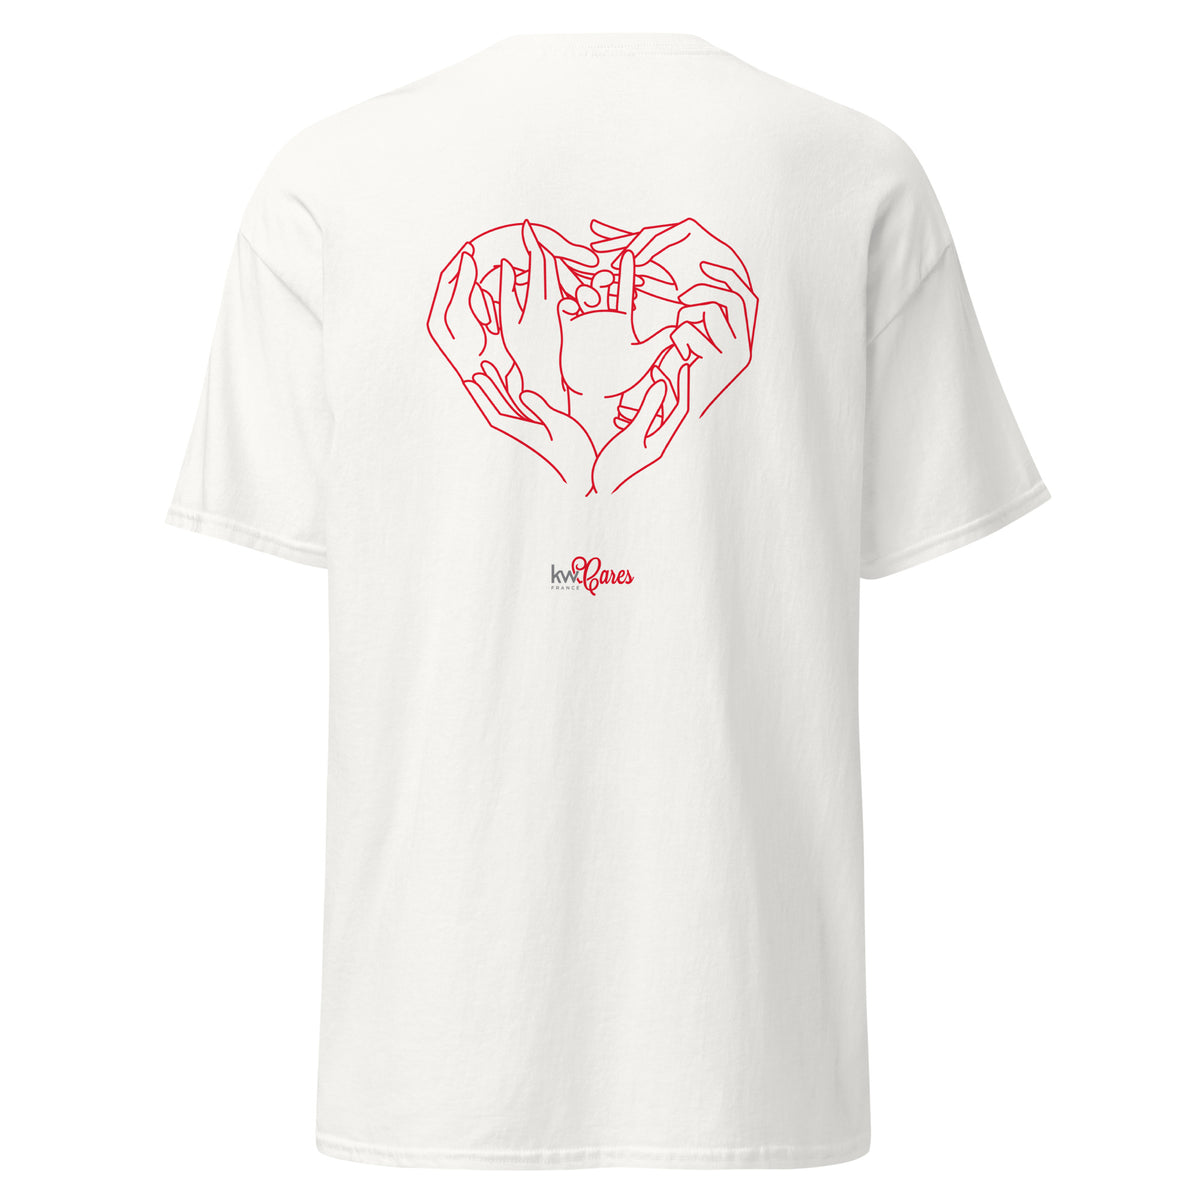 T-shirt Basique Unisexe - KW France Cares - Coeur